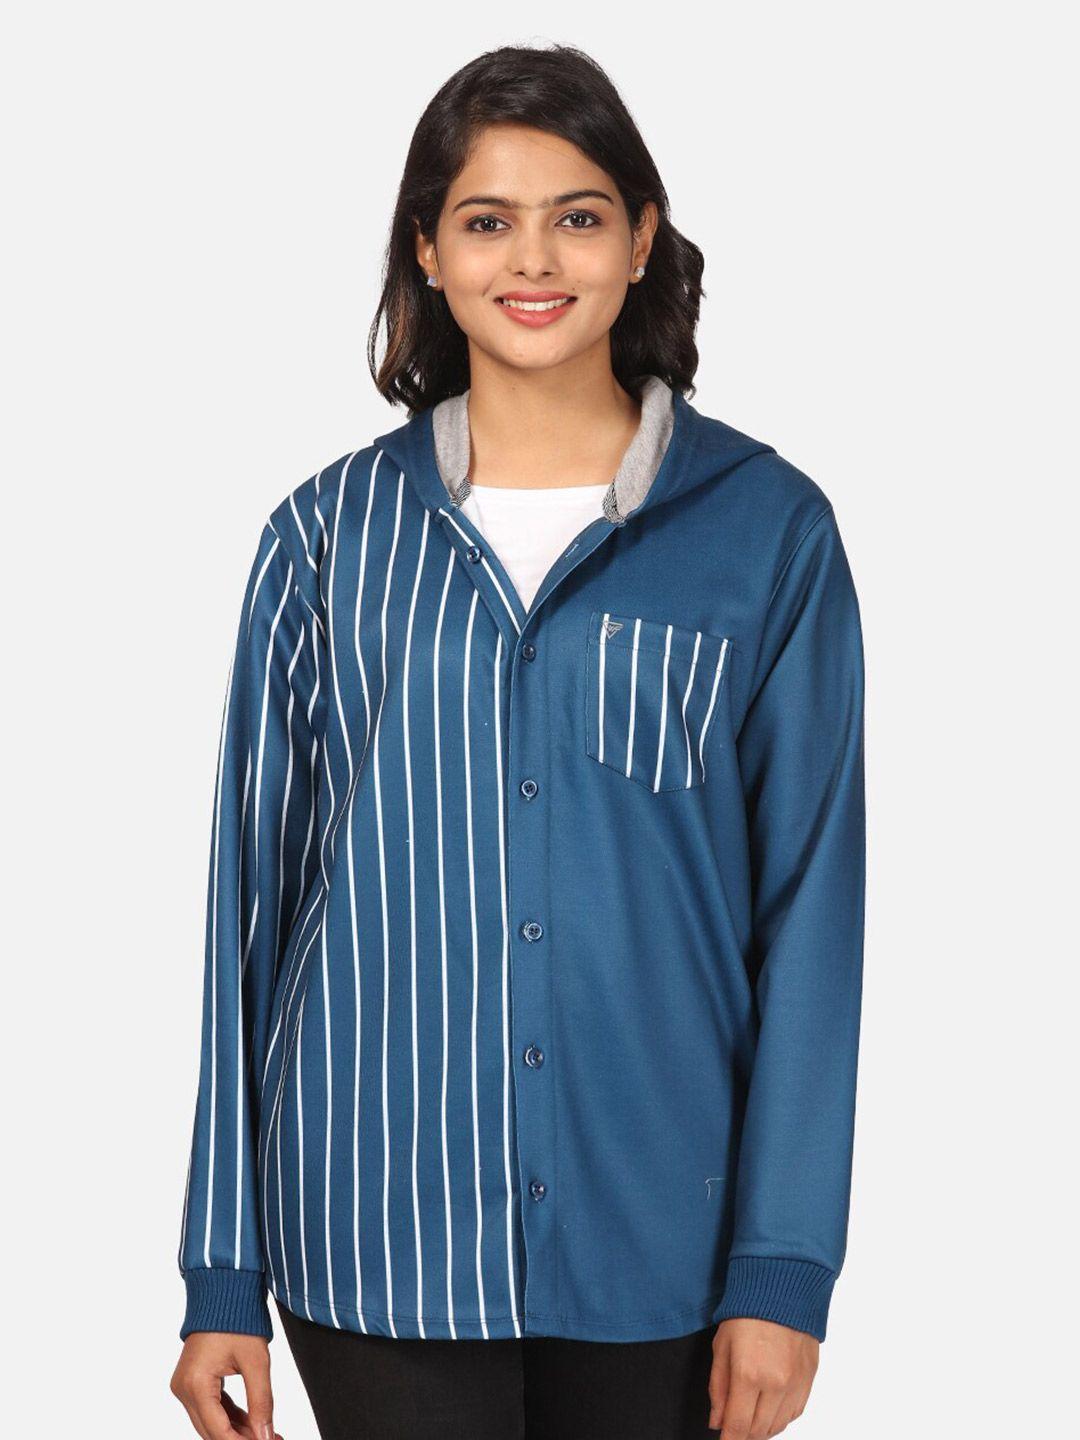 hellcat women navy blue & white striped fleece hooded front-open sweatshirt